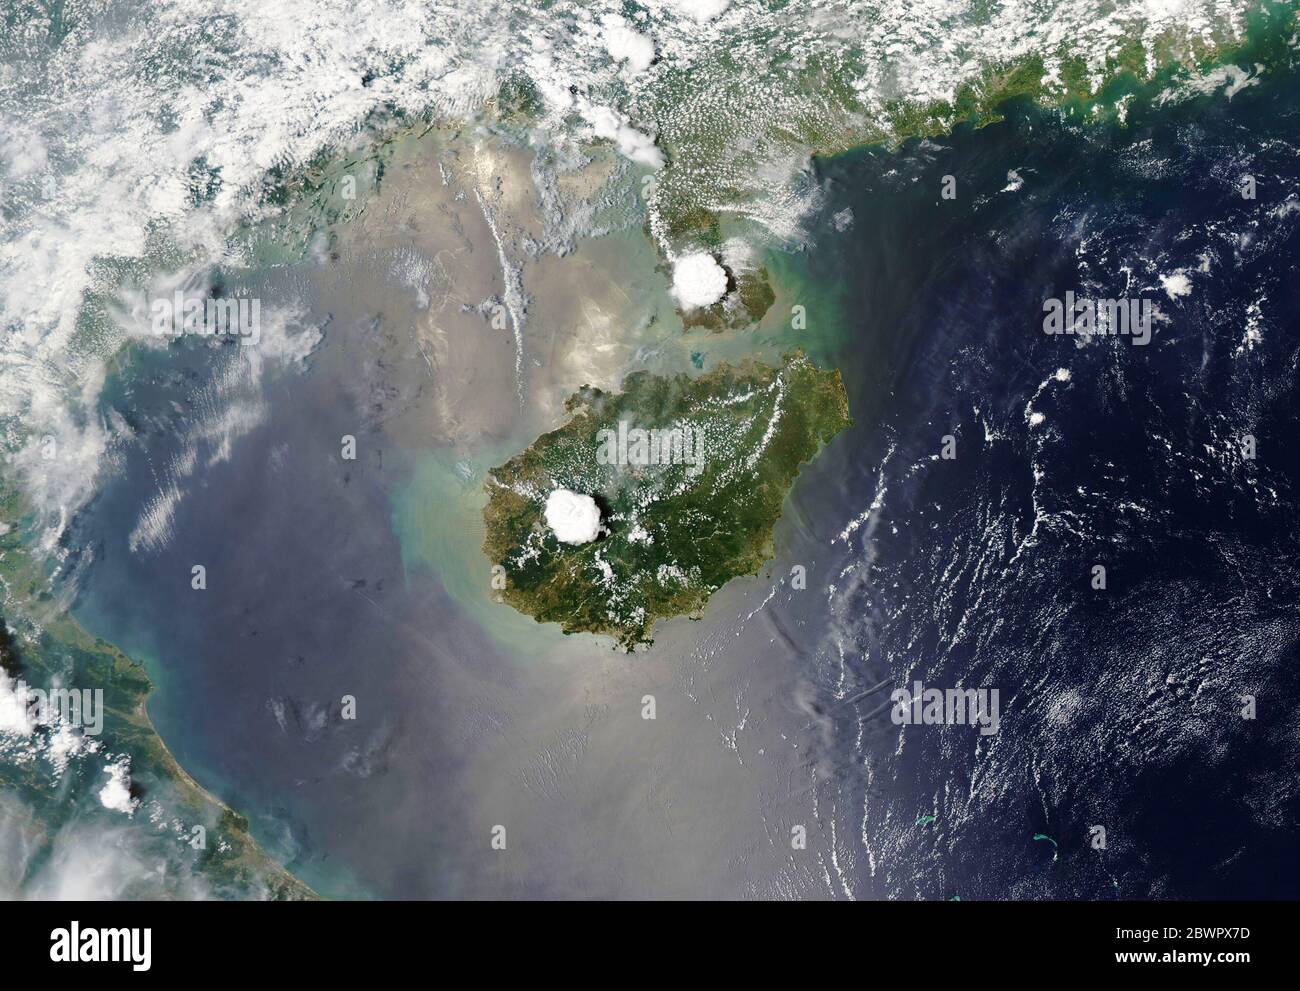 HAINAN ISLAND, CHINA - 11. Mai 2020 - Verbringen Sie Zeit auf Chinas Hainan Island, und die Chancen sind gut, dass Sie einen Gewitter erleben werden. Hainan und nei Stockfoto